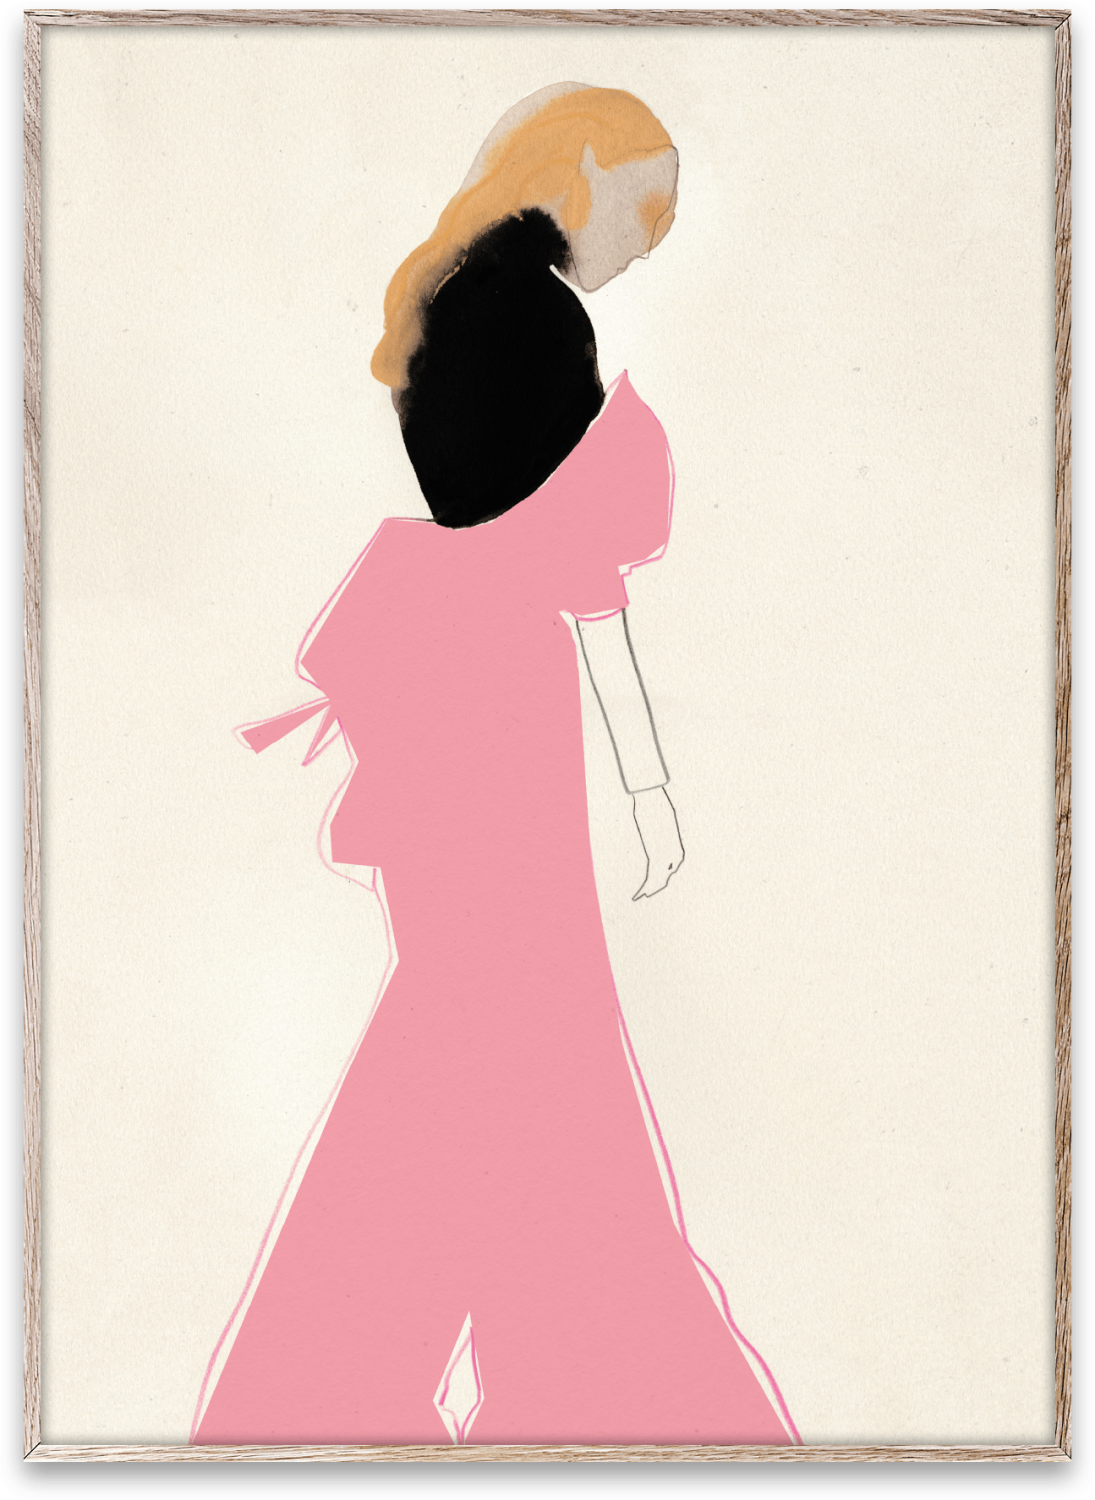 Paper Collective - Amelie Hegardt - Pink Dress